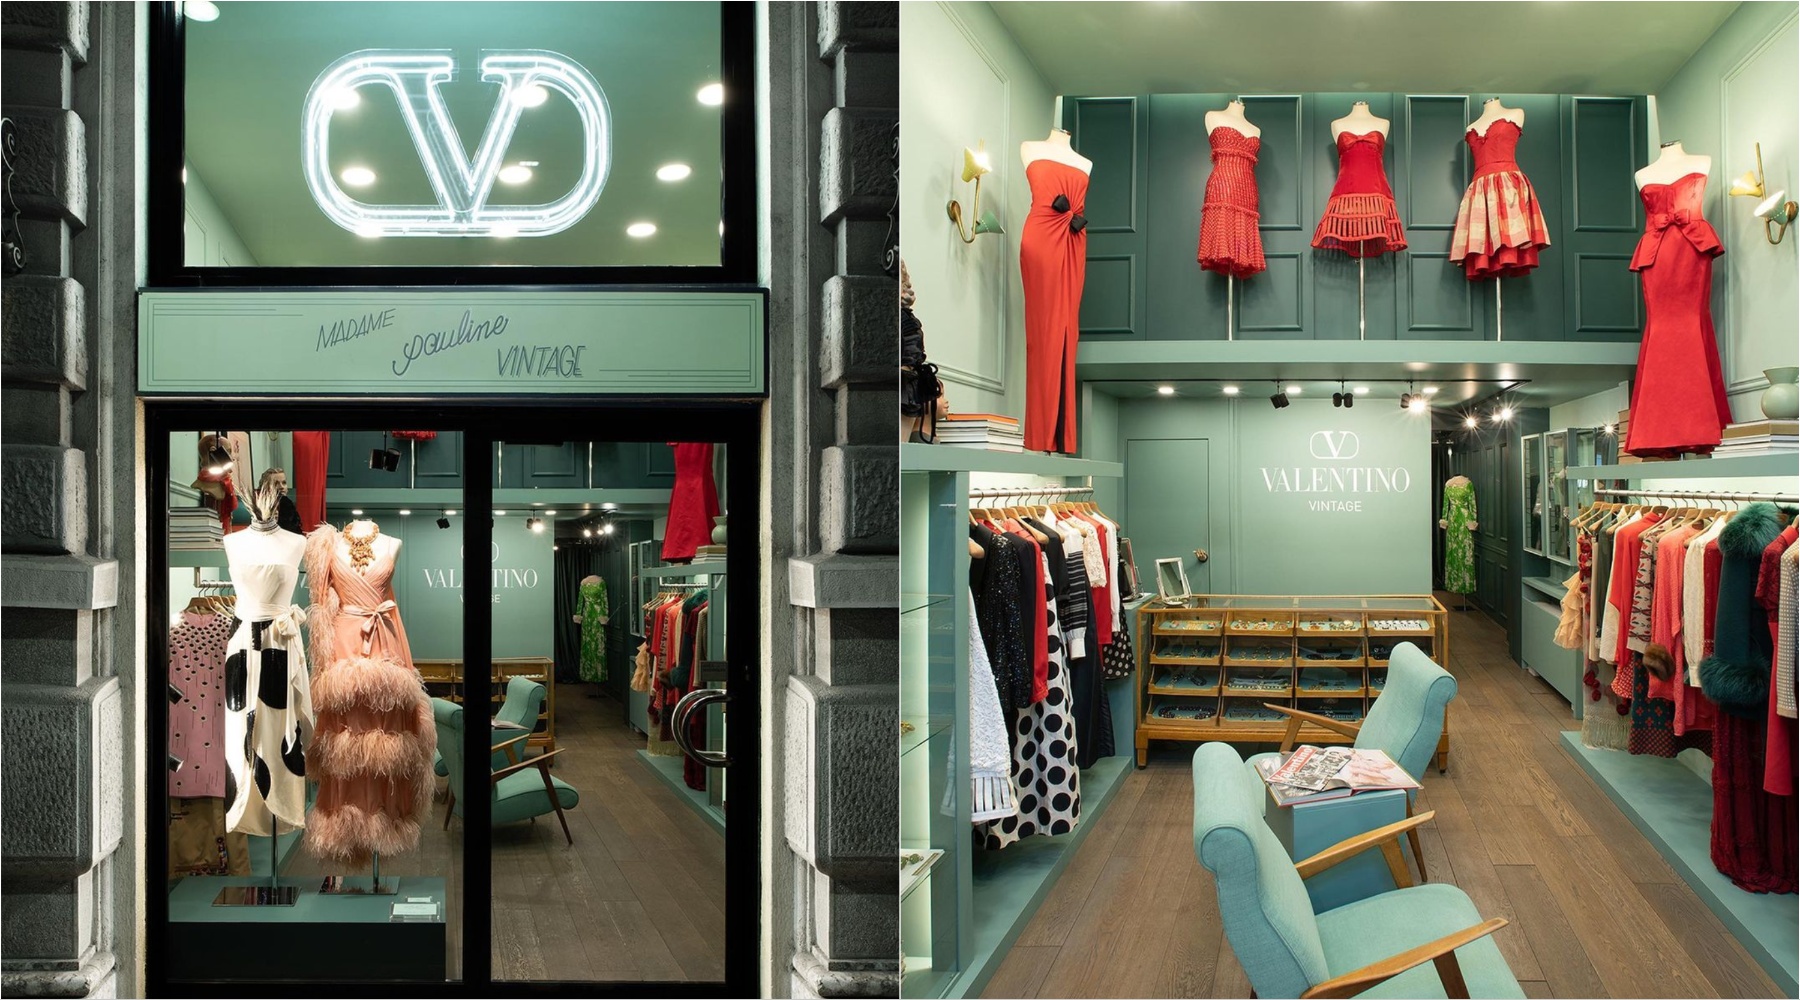 Valentino Vintage: Italijanska modna kuća pokrenula je program staro za novo